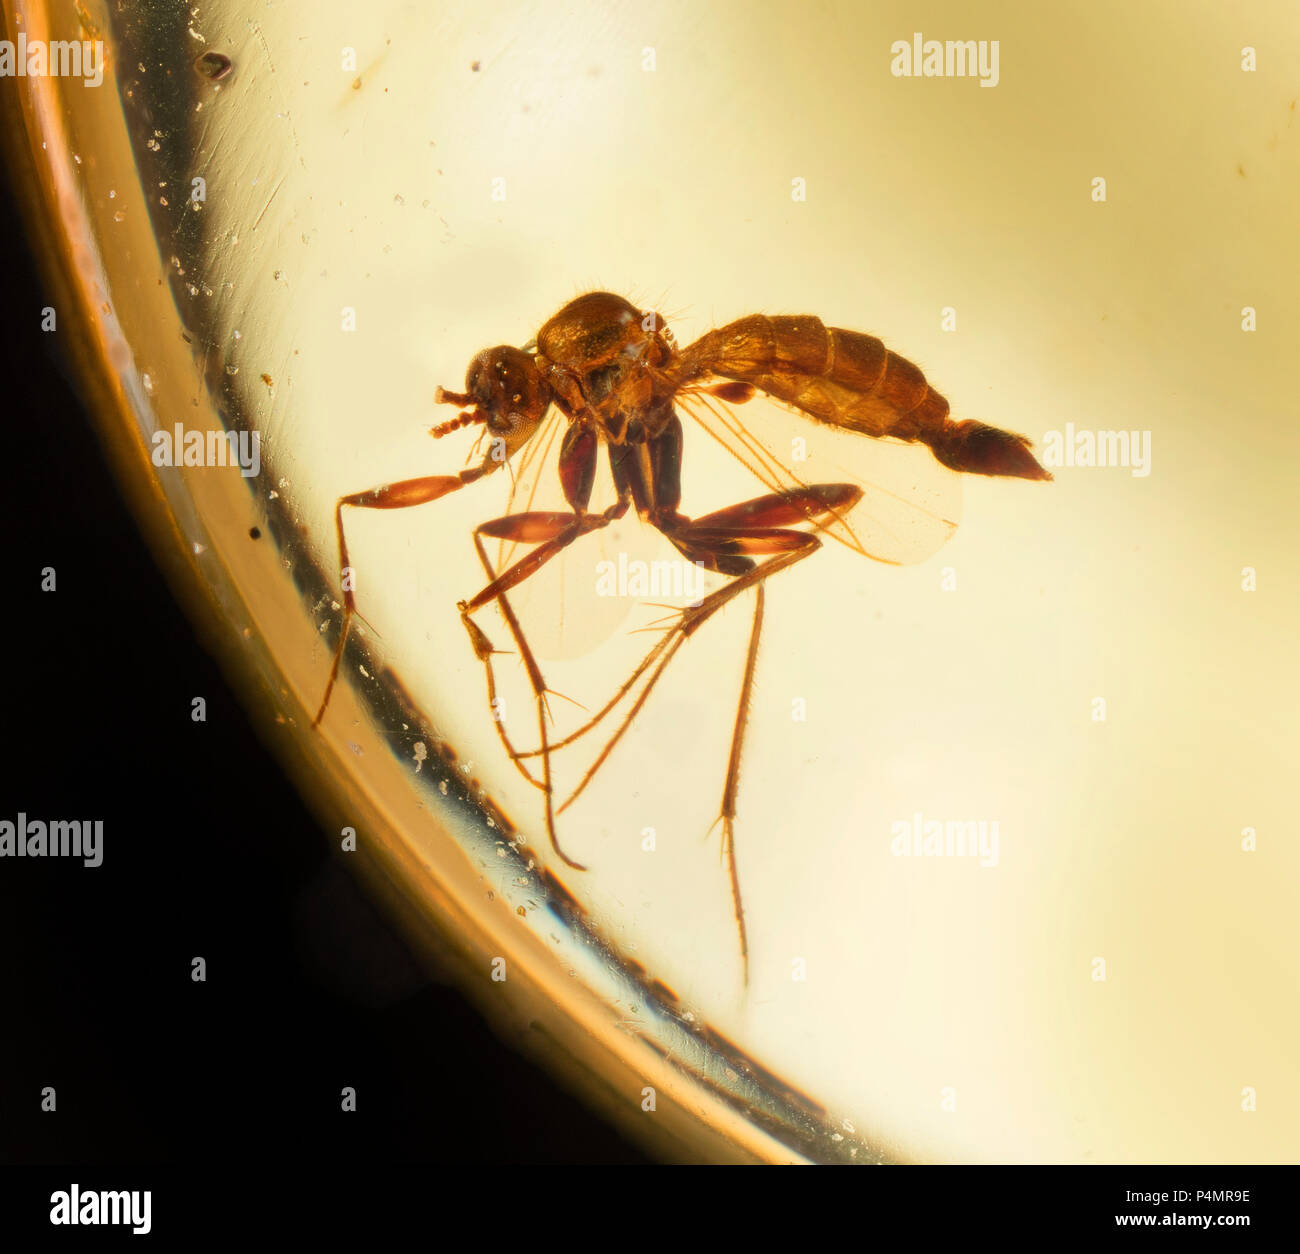 Volar los insectos atrapados en ámbar birmano Foto de stock